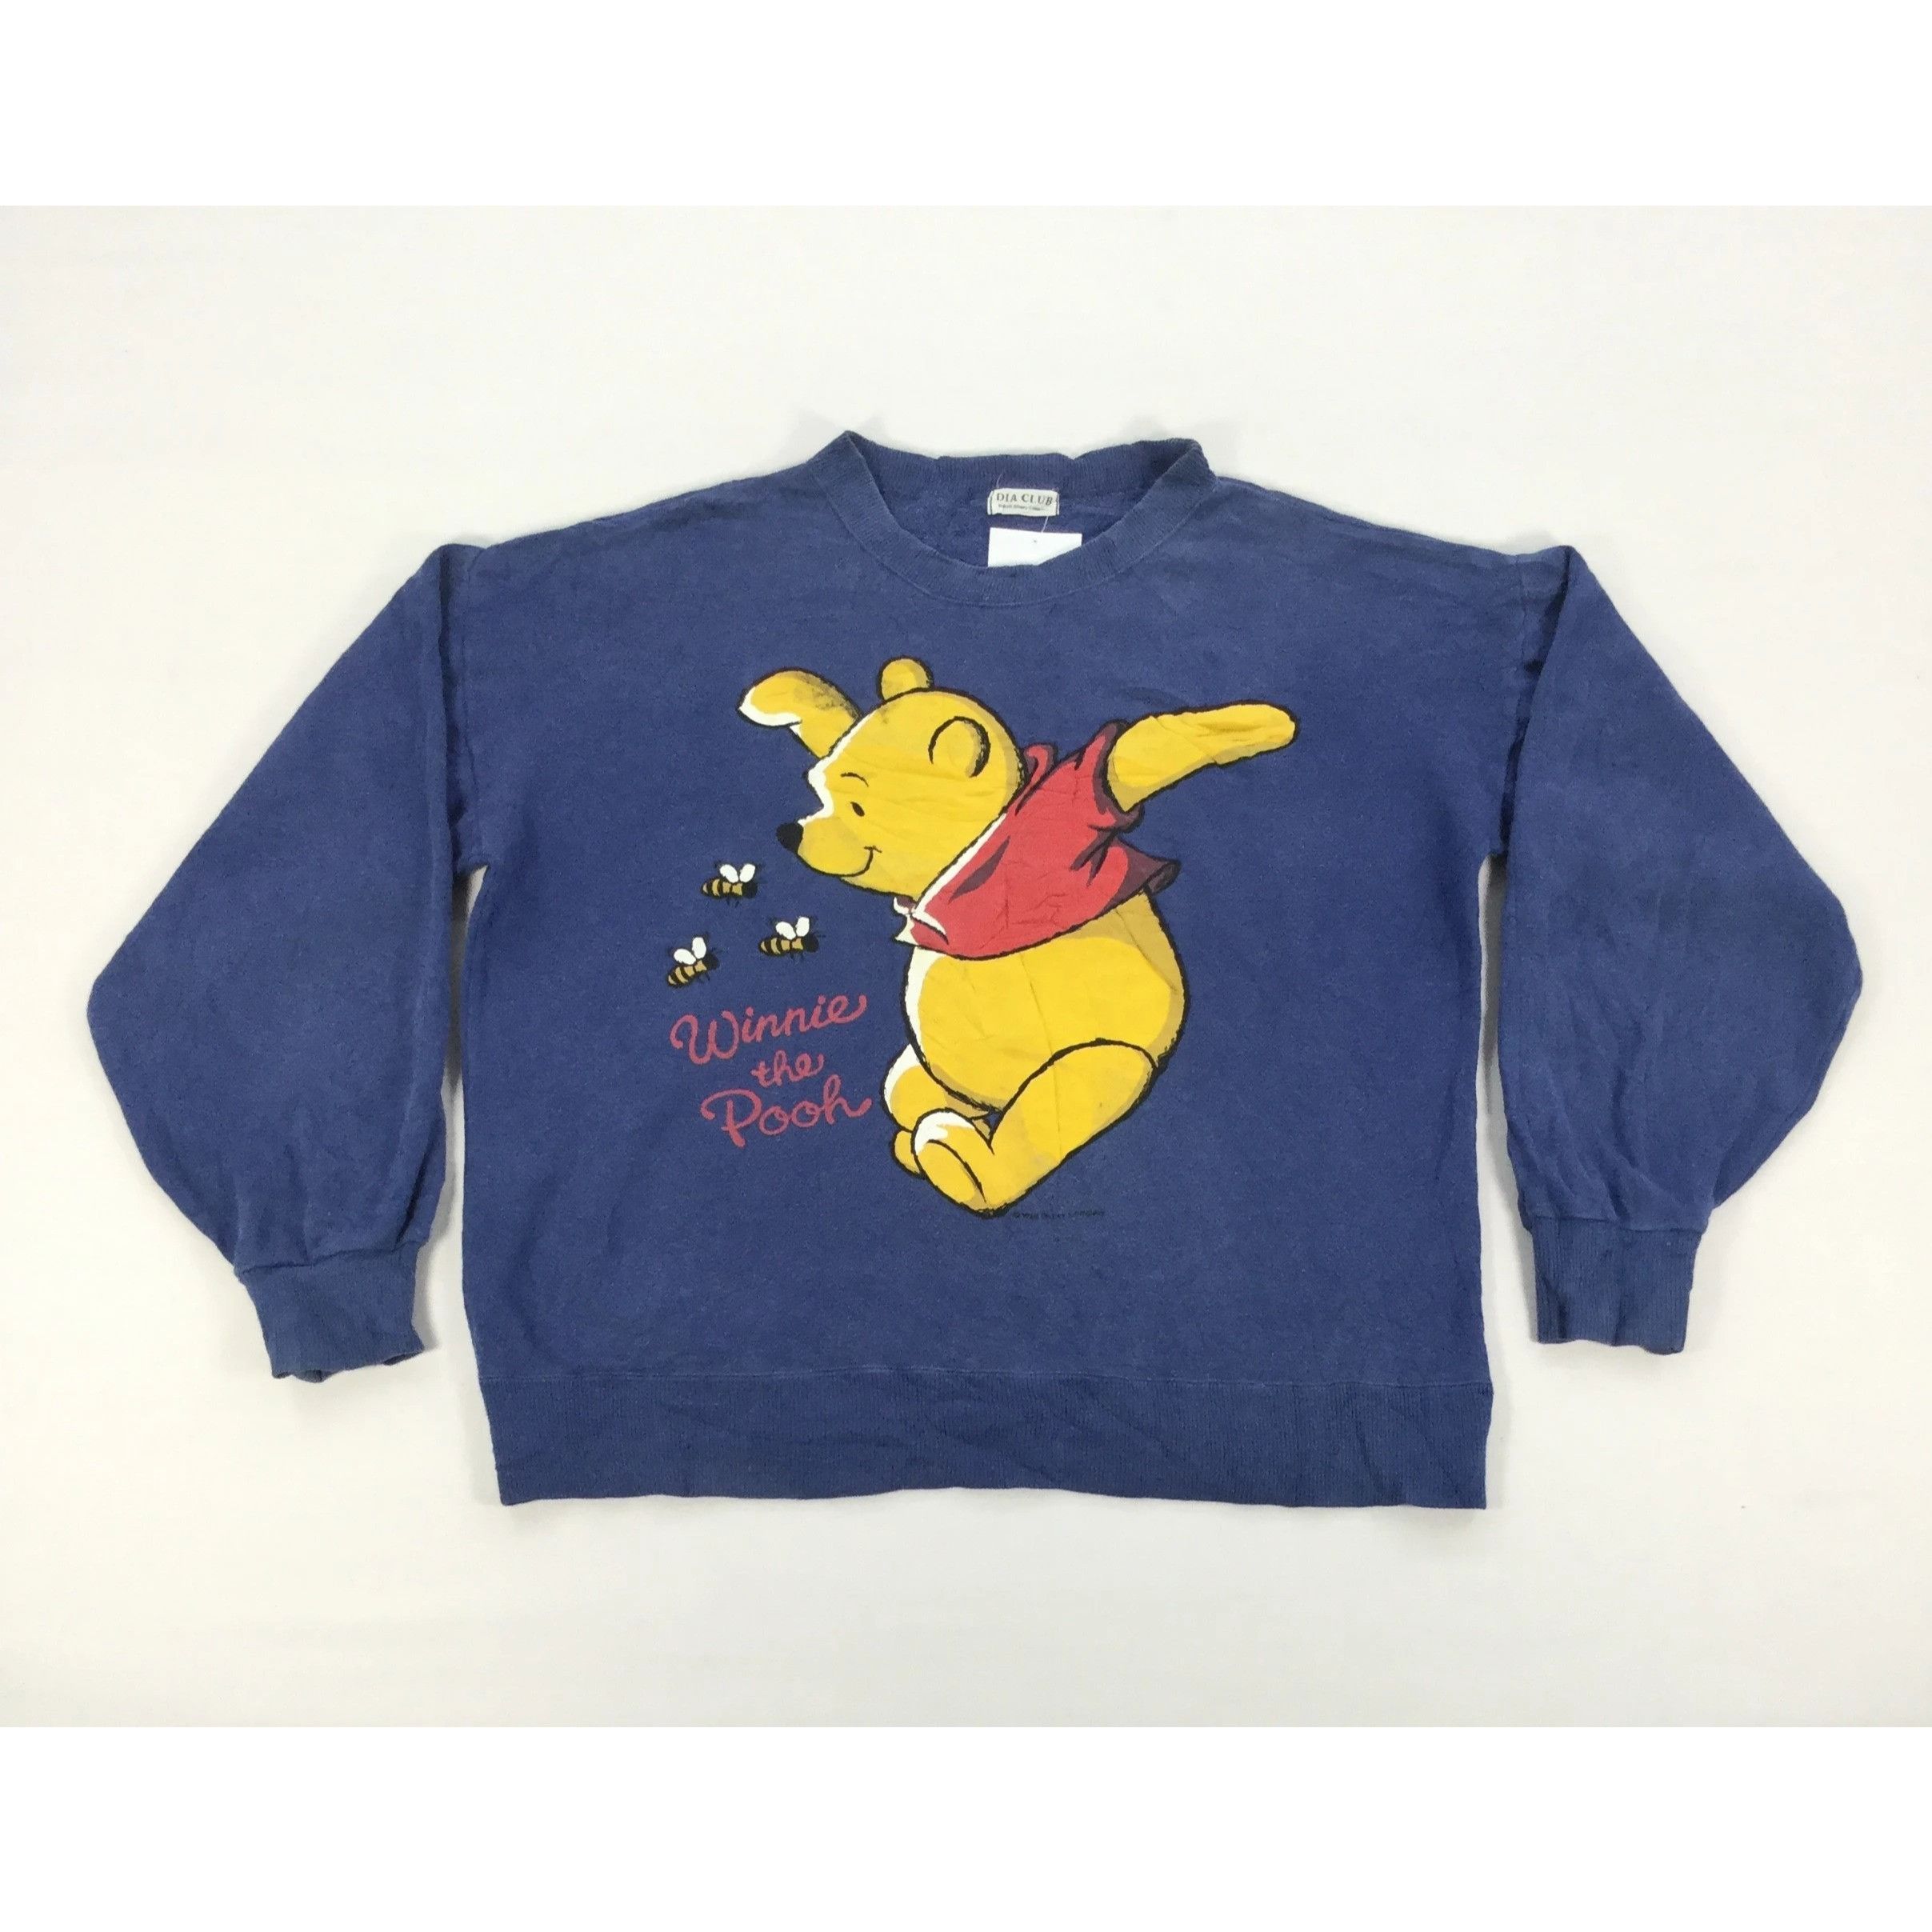 Vintage Vintage 90s WINNIE THE POOH Sweatshirt Medium Size Cartoon ...